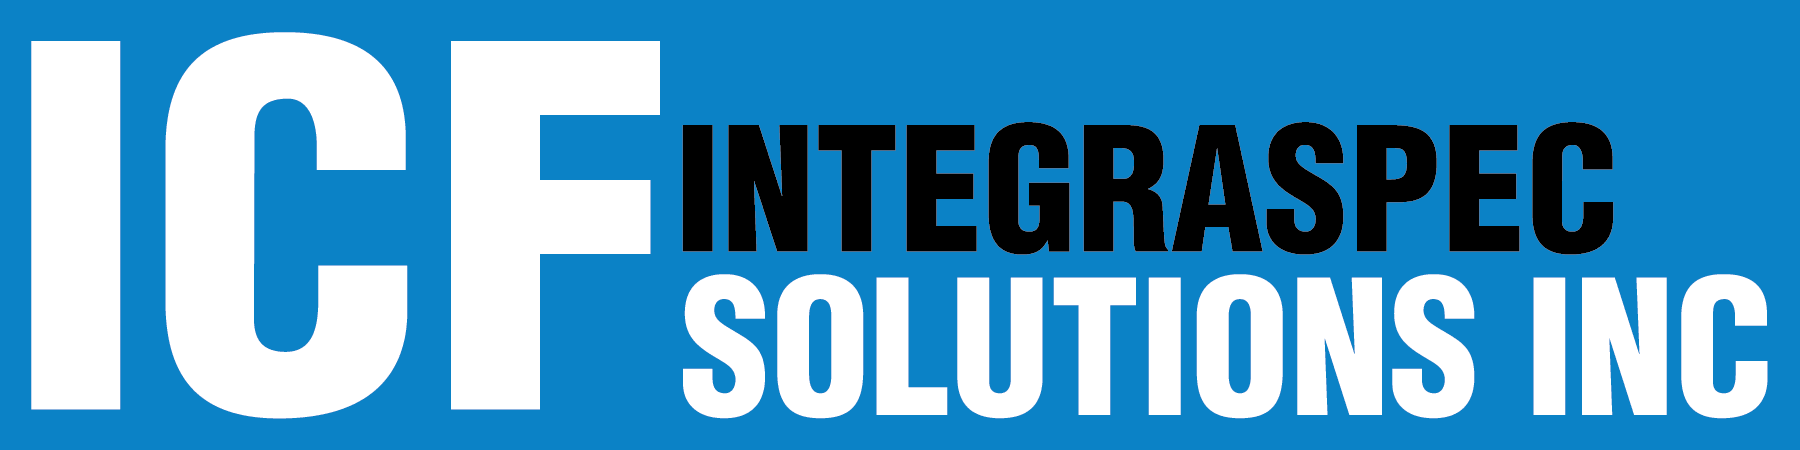 ICF Integraspec Solutions Inc